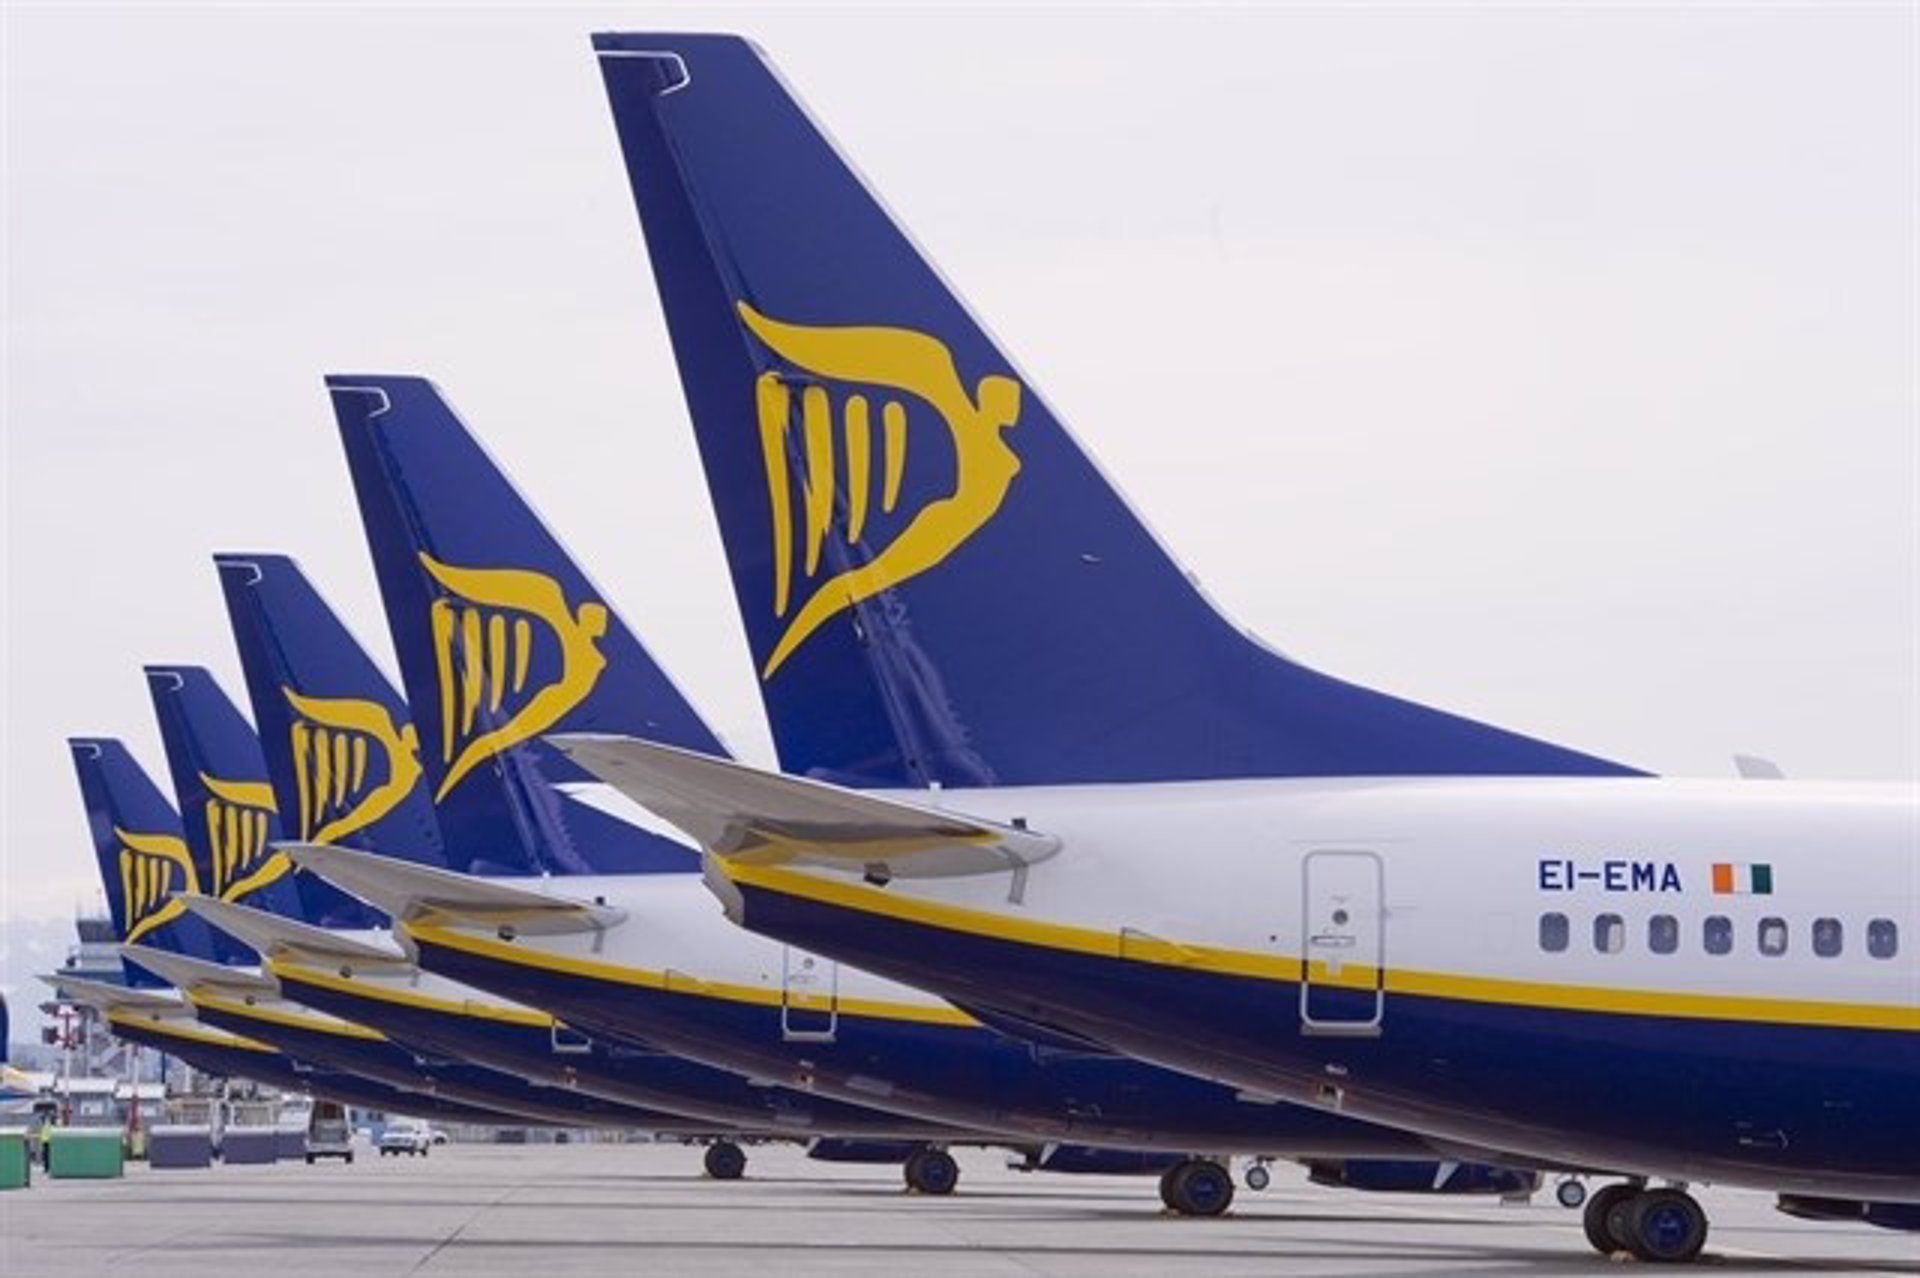 El Supremo confirma la nulidad del ERTE de Ryanair a trabajadores readmitidos del ERE en Canarias y Girona